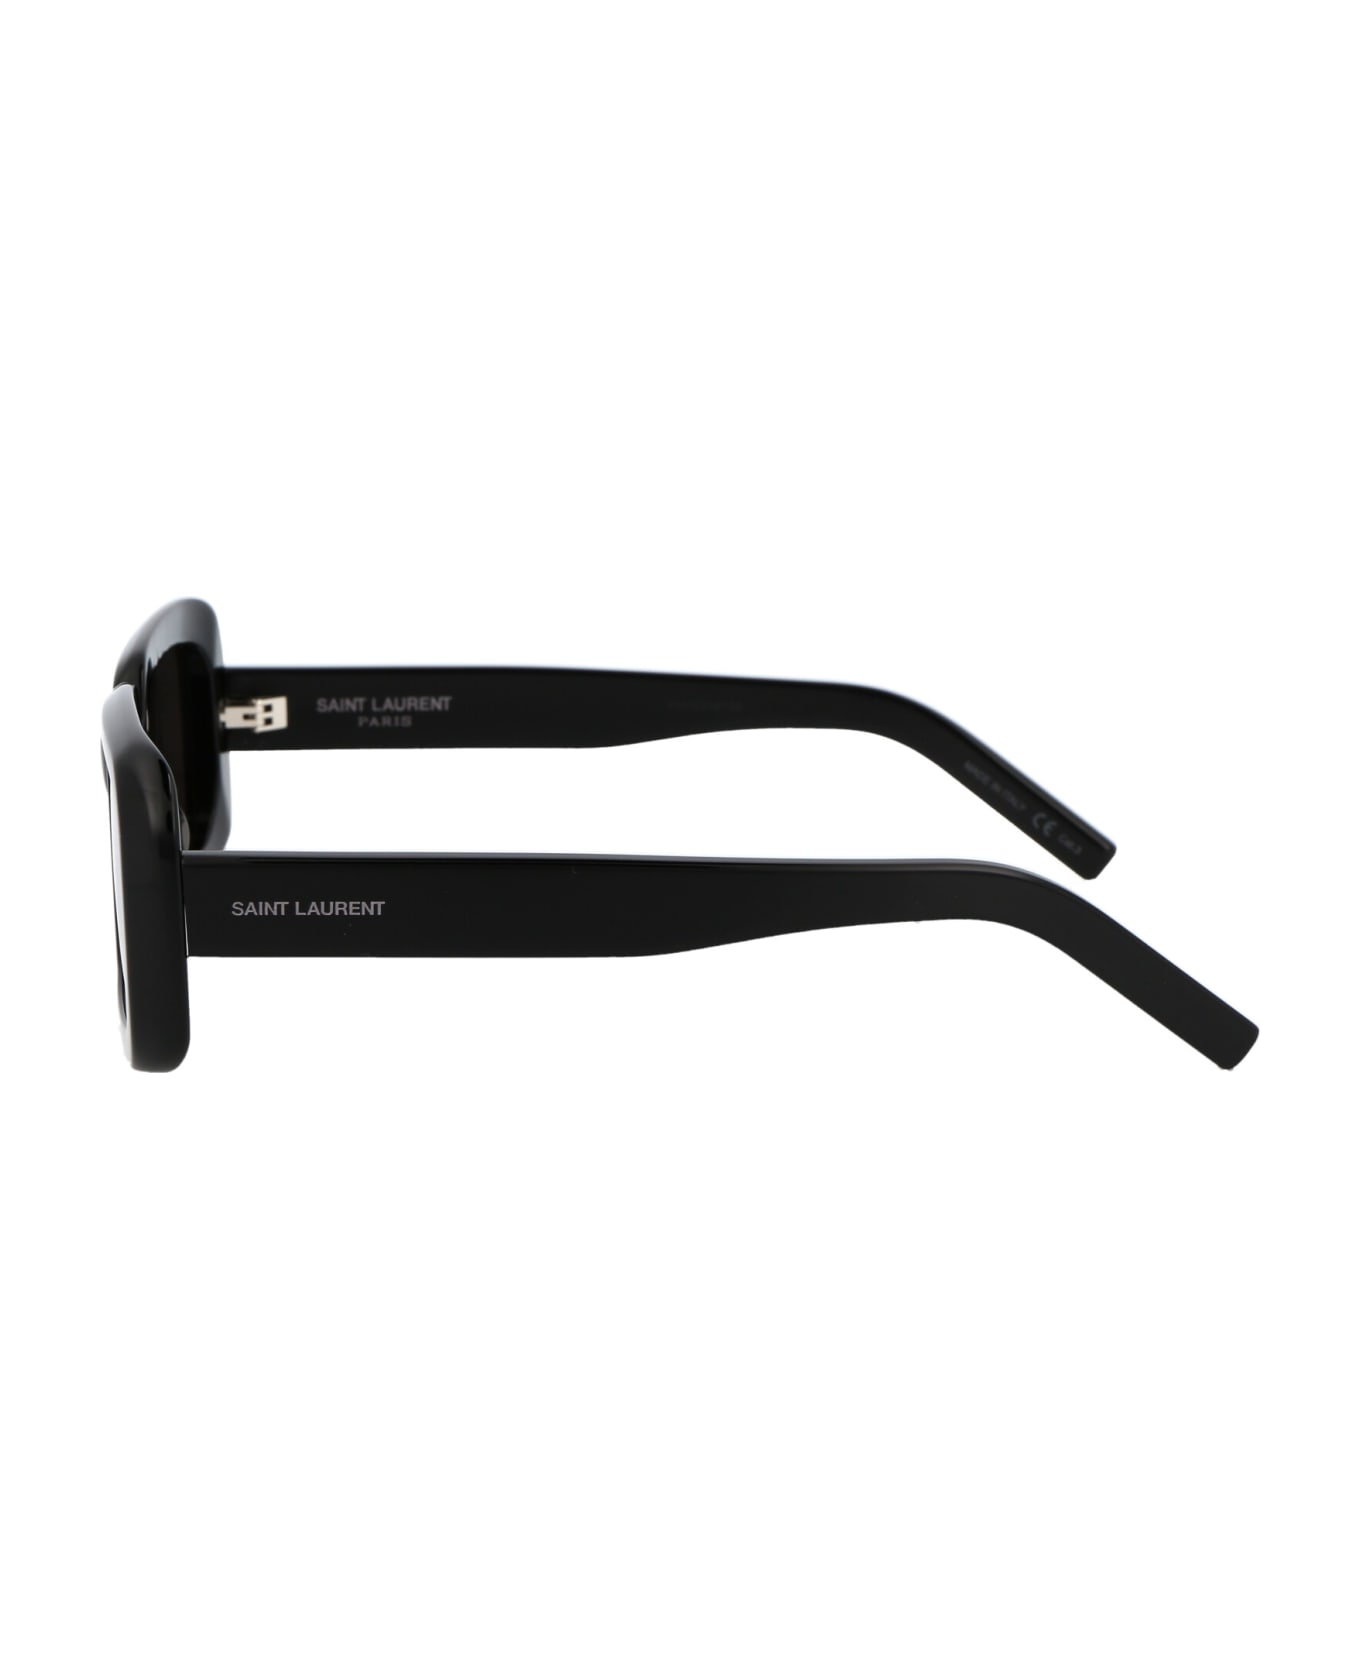 Saint Laurent Eyewear Sl 534 Sunrise Sunglasses - 001 BLACK BLACK BLACK